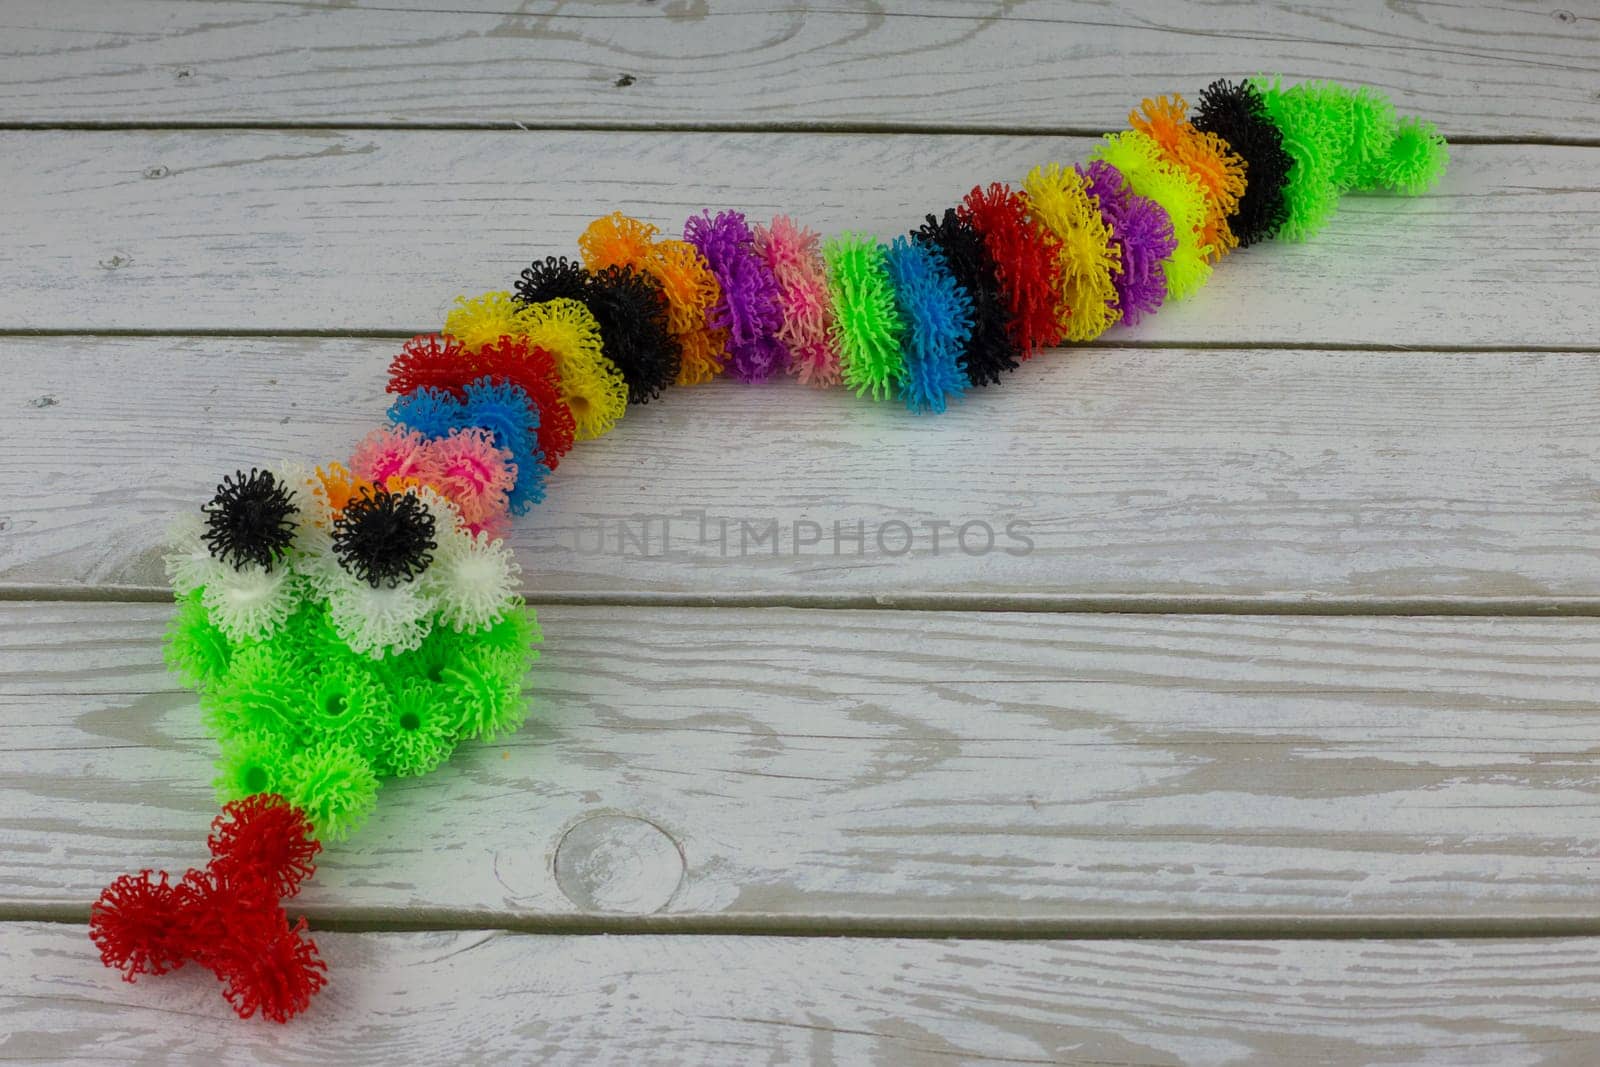 Toy snake made of multi colored burdocks, fluffy velcro construction set for children development